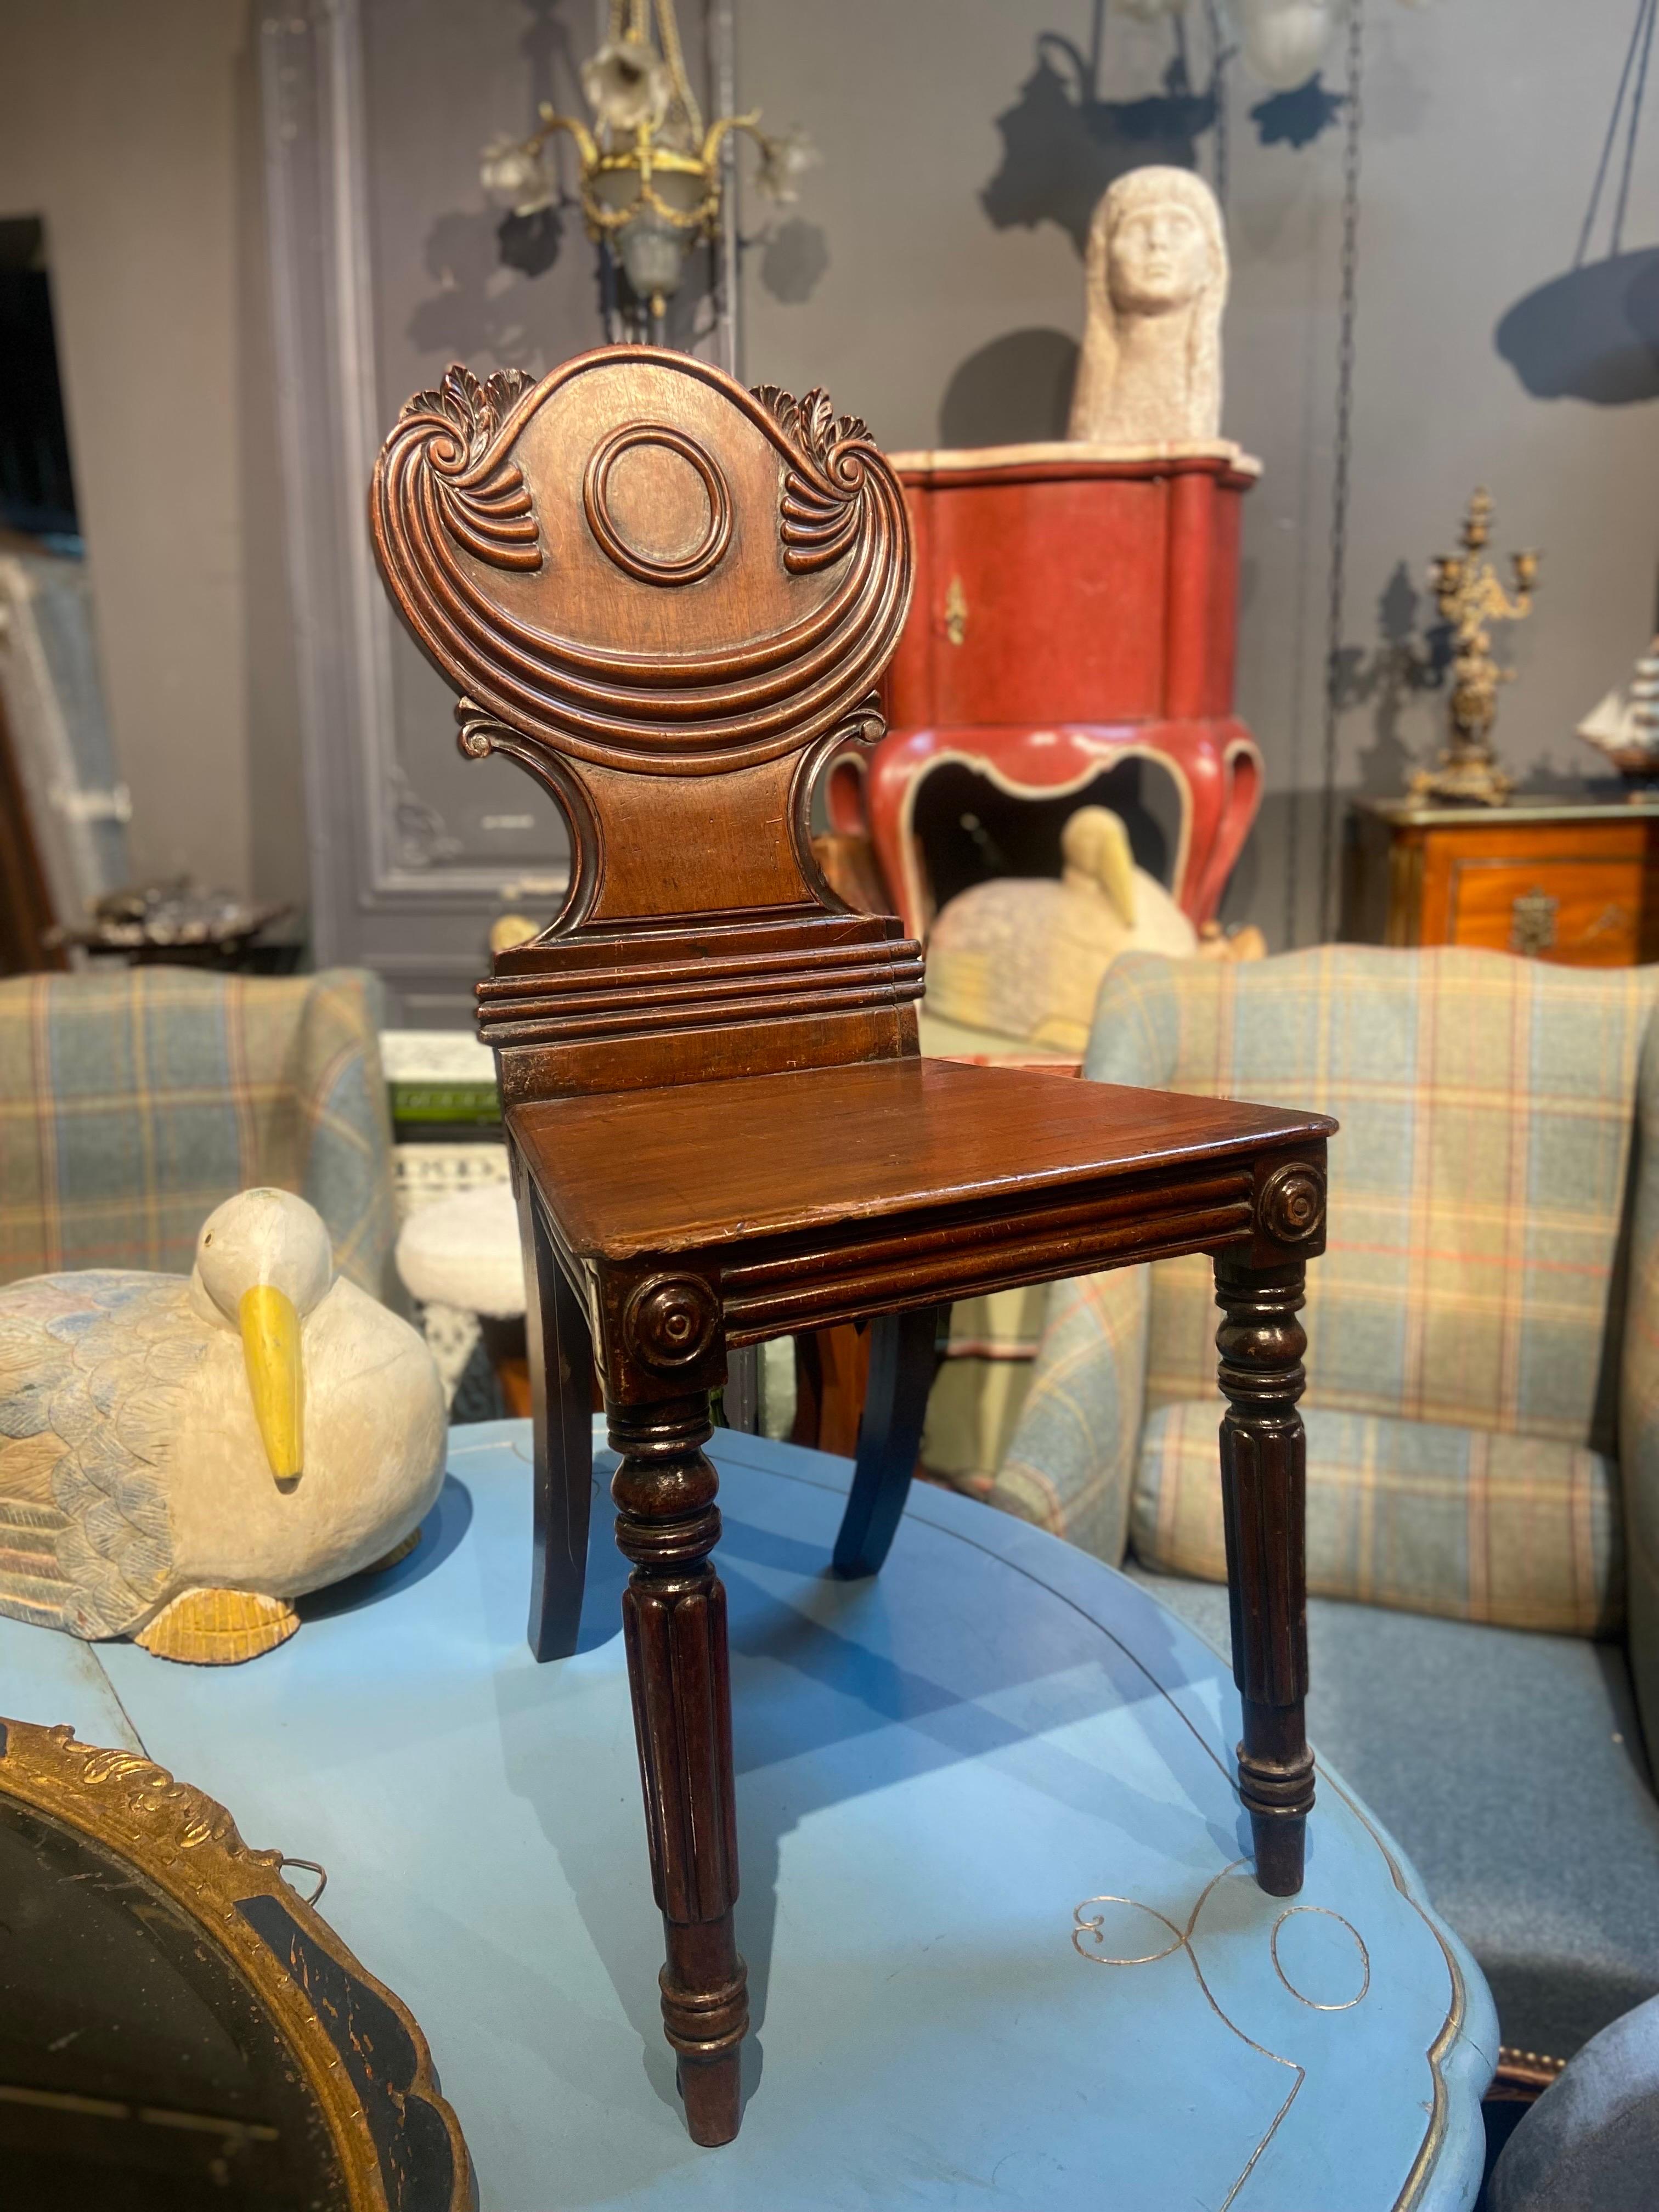 Attrayante chaise de salle en acajou du dix-neuvième siècle. Dossier ovale sculpté à la main avec de jolies décorations élégantes et un siège reposant sur des pieds tournés à cannelures.
Angleterre, vers 1880